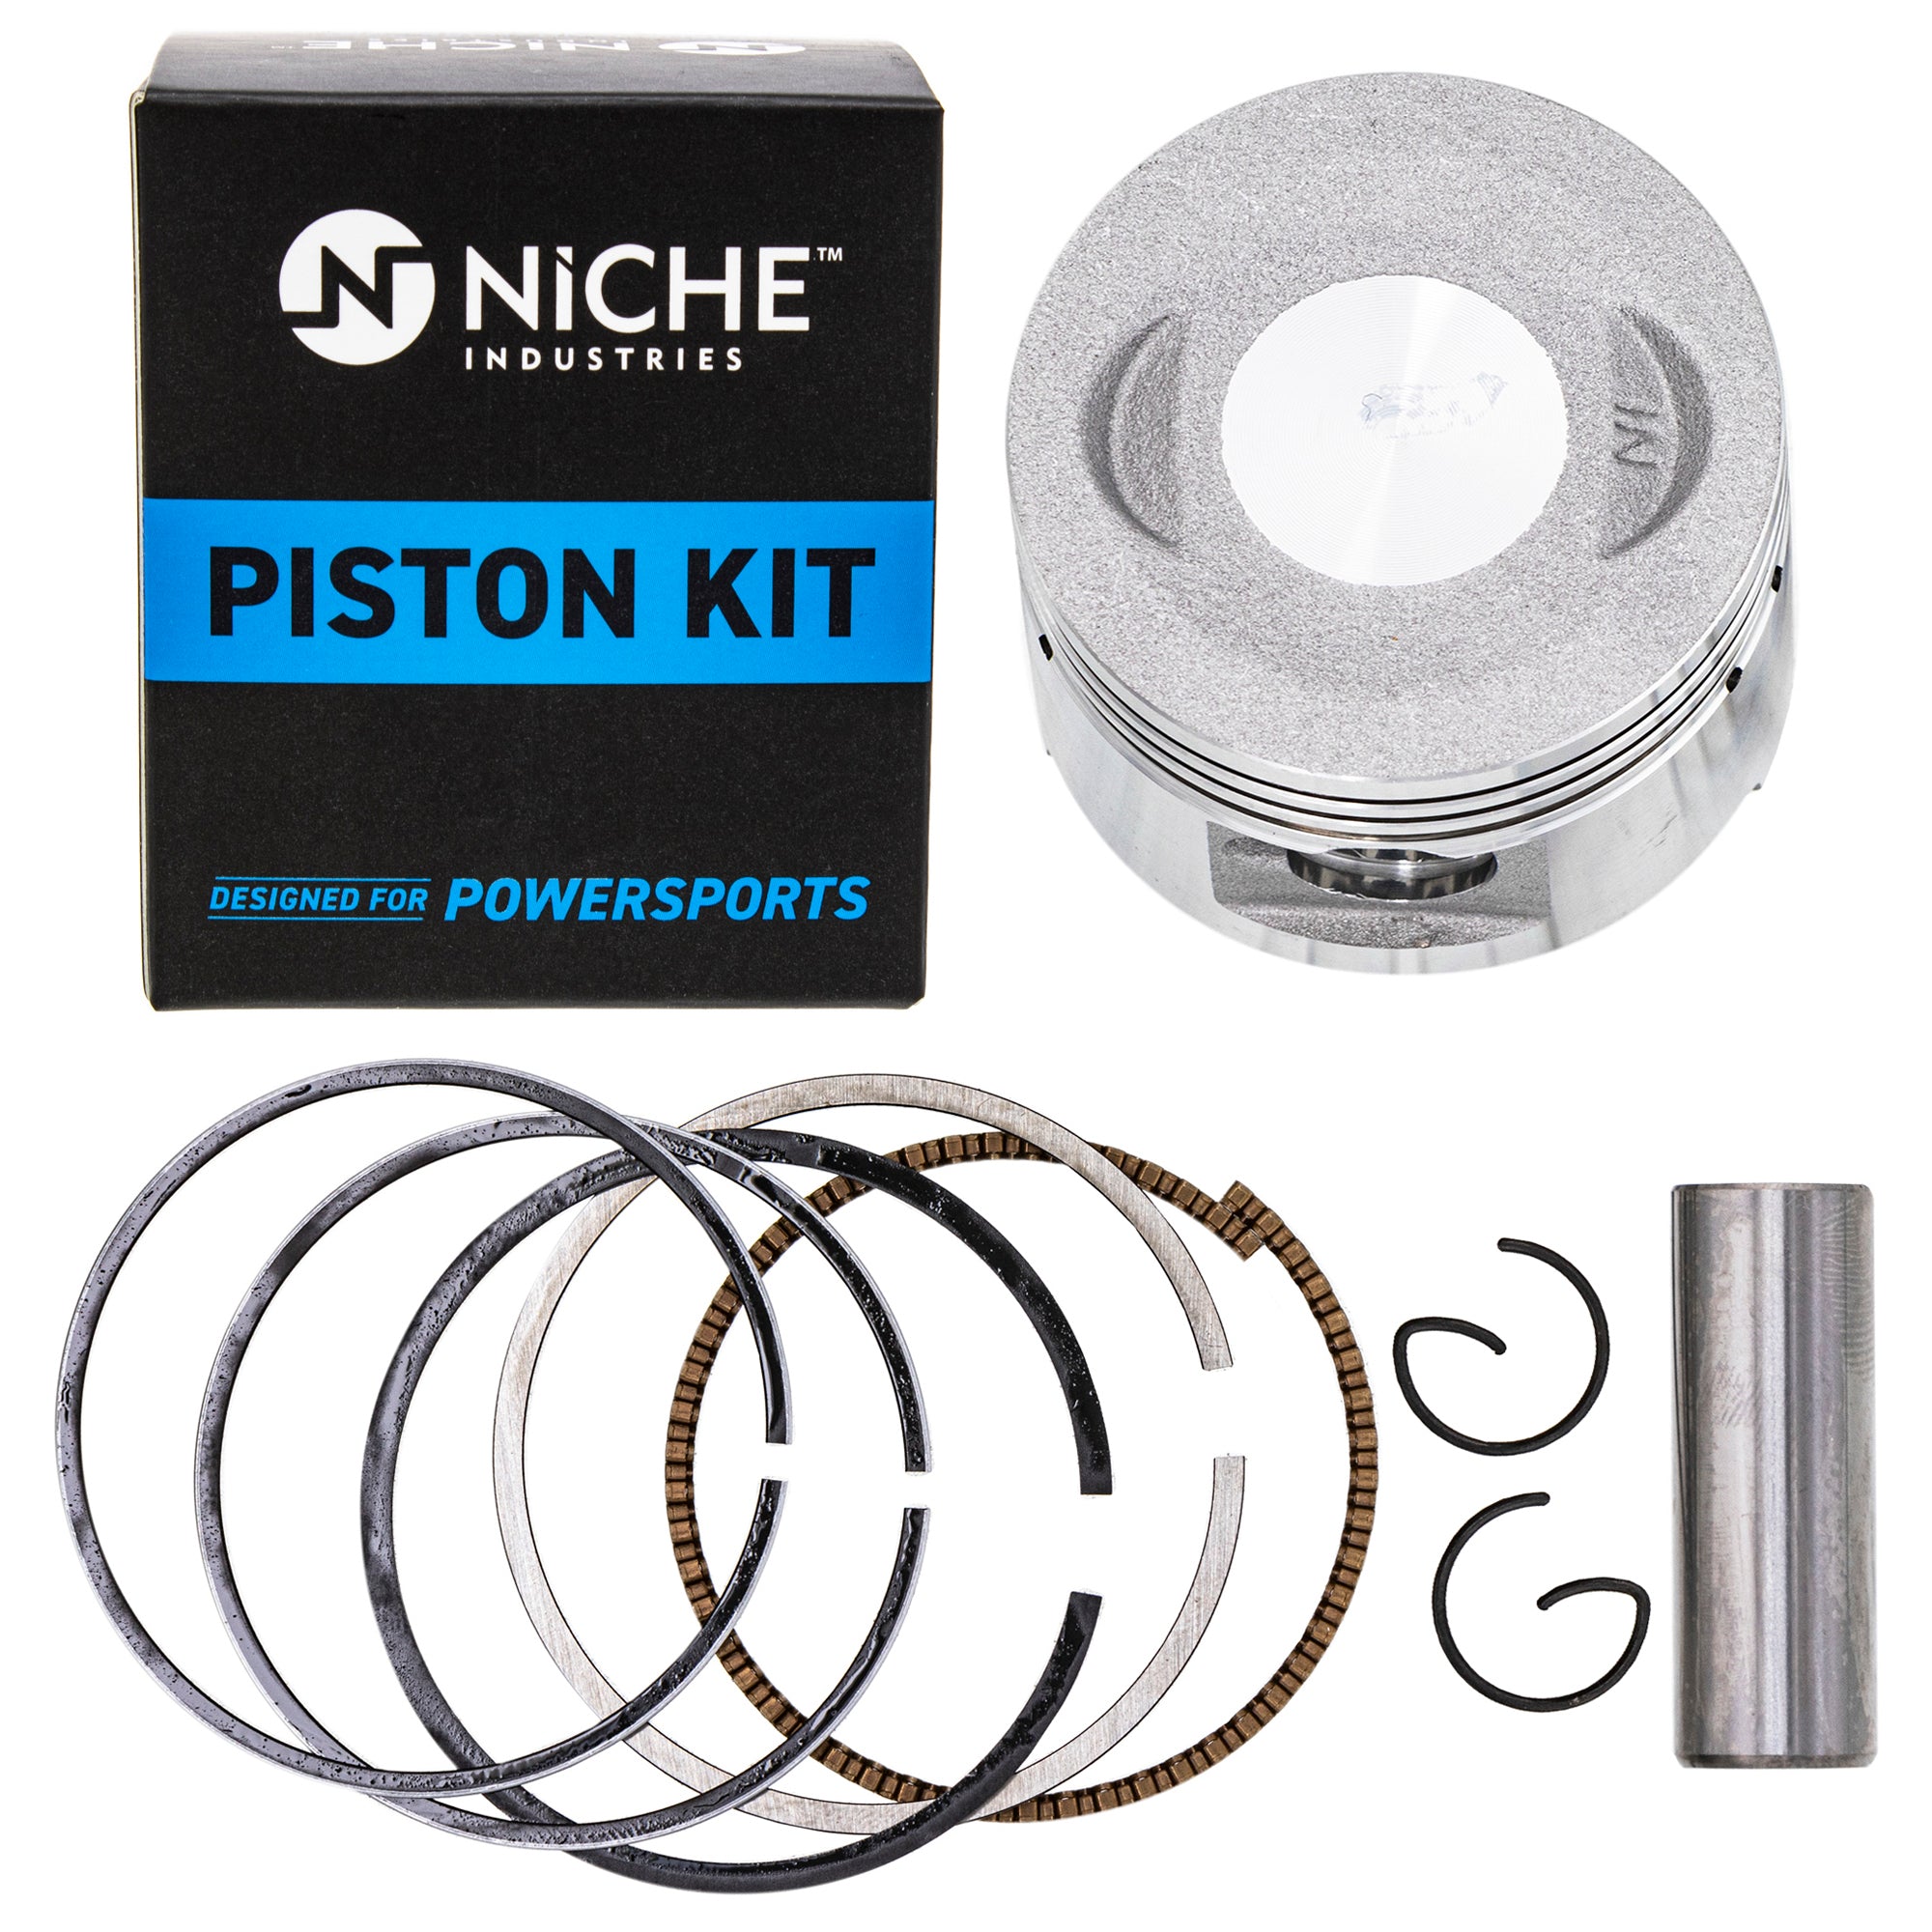 NICHE MK1001160 Piston Kit